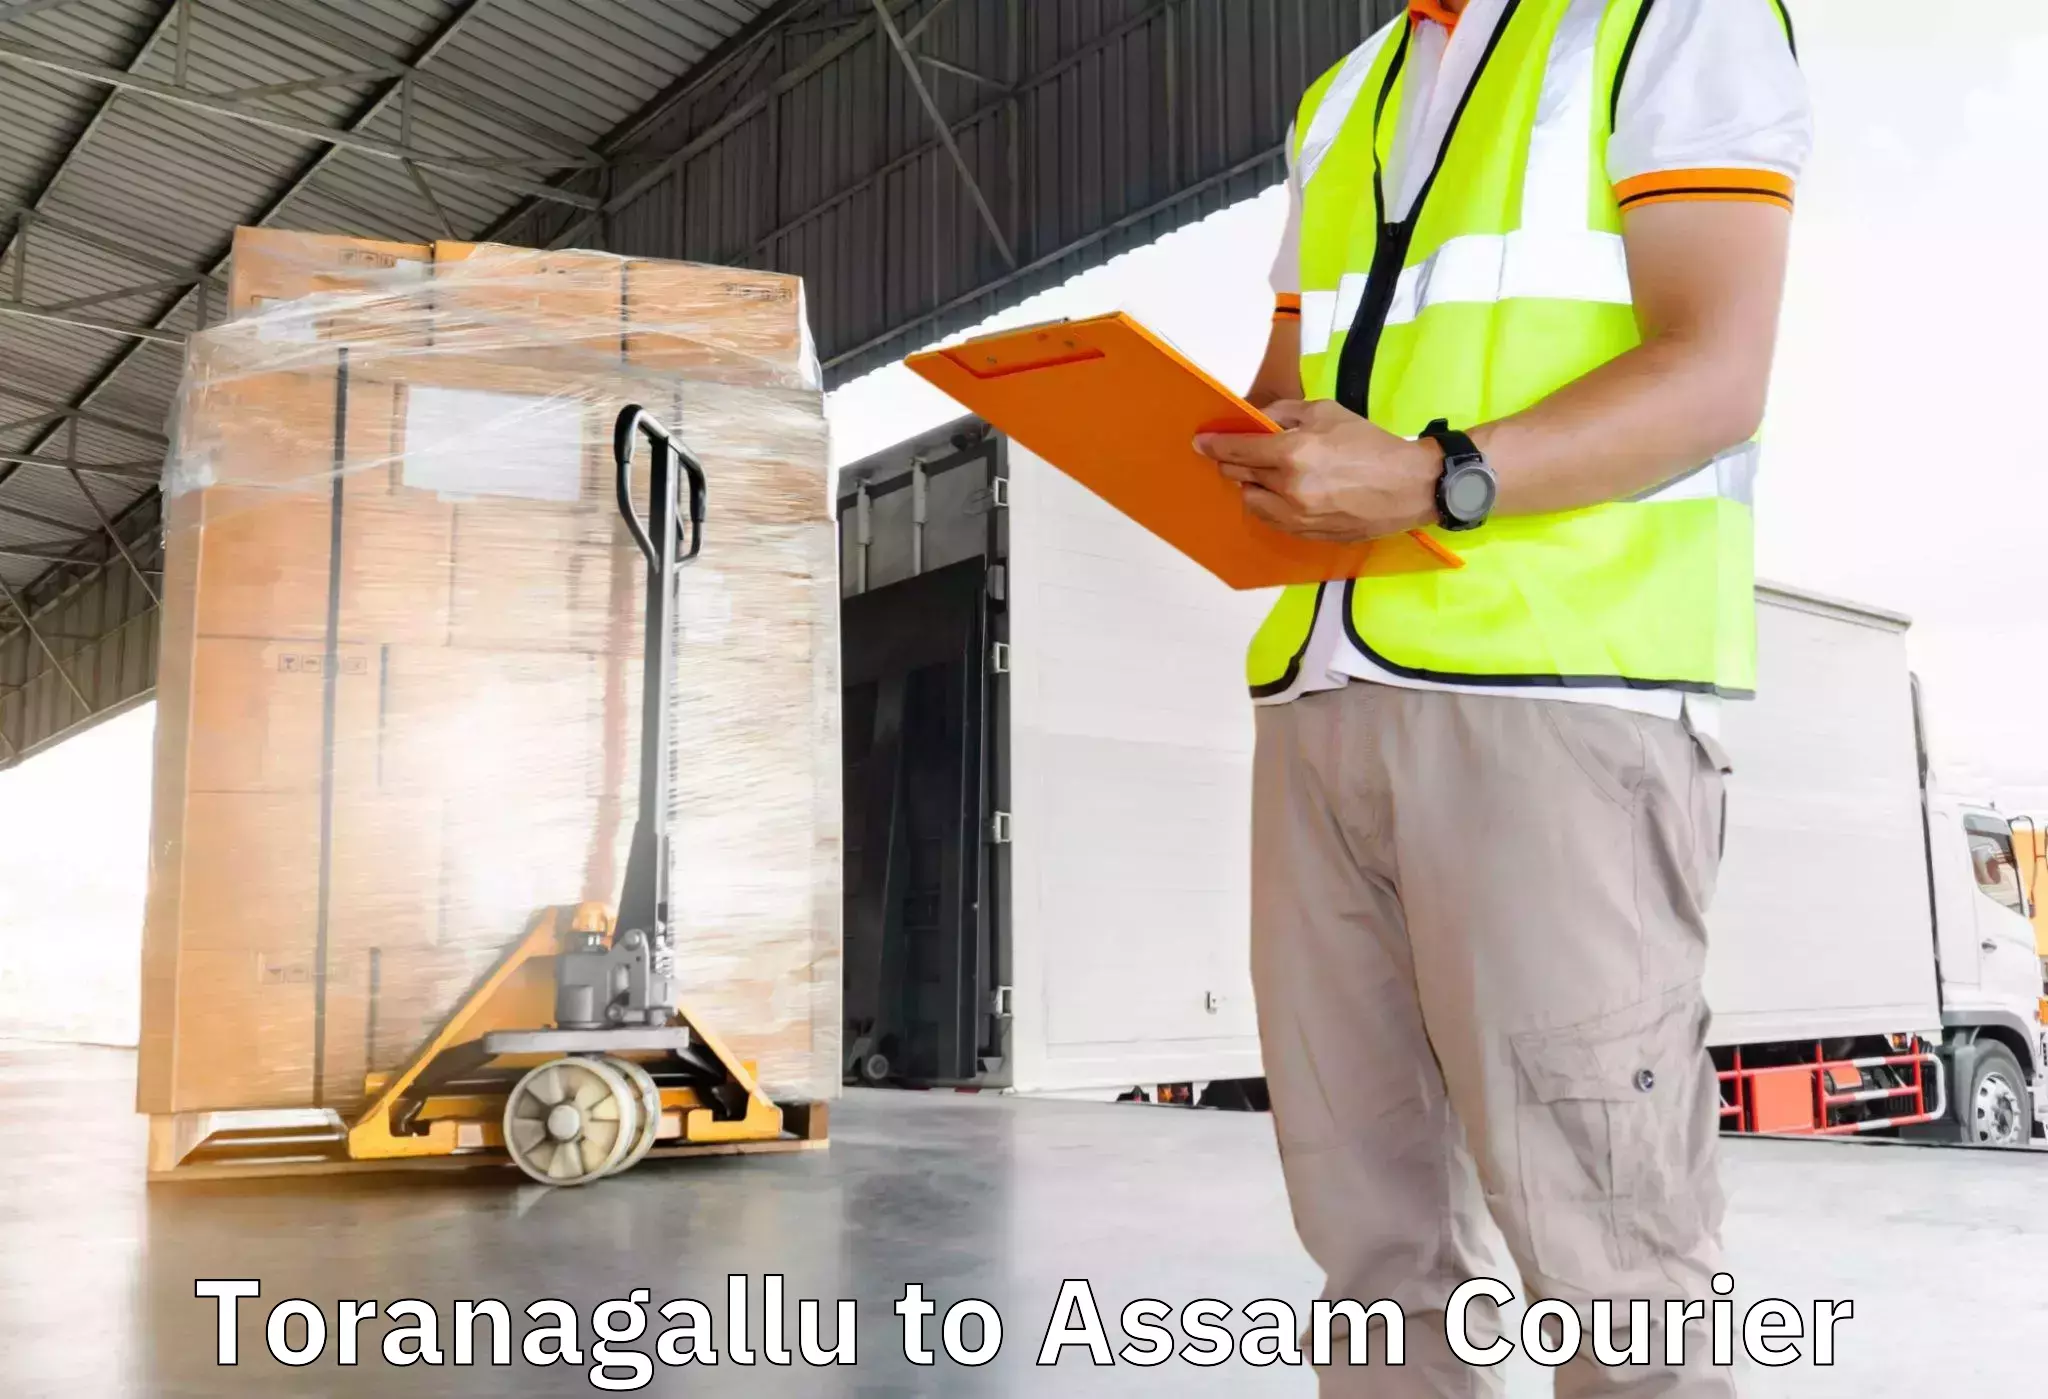 Furniture shipping services in Toranagallu to Assam